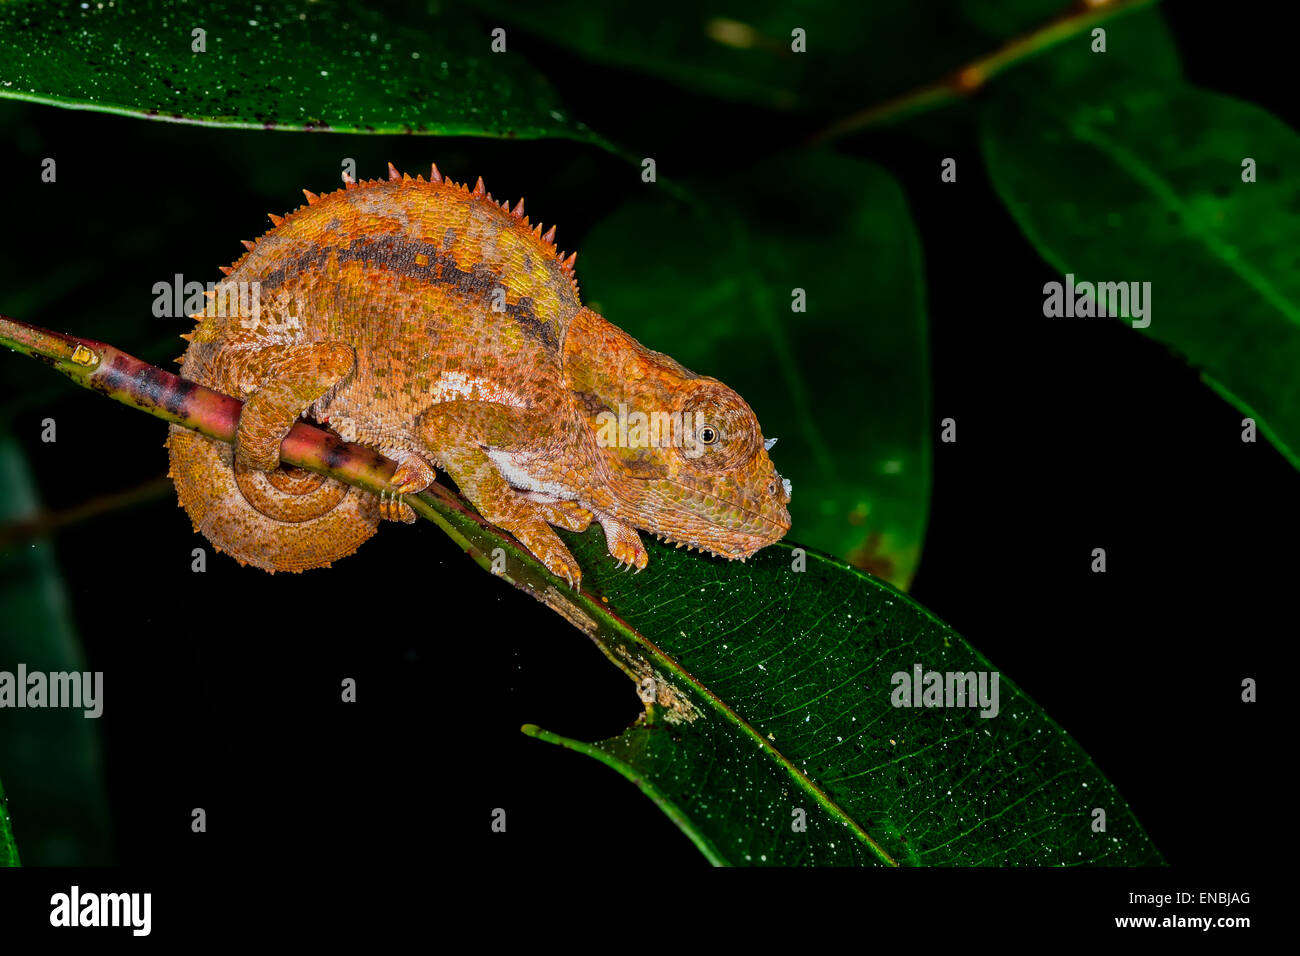 short-horned chameleon, andasibe, madagascar Stock Photo